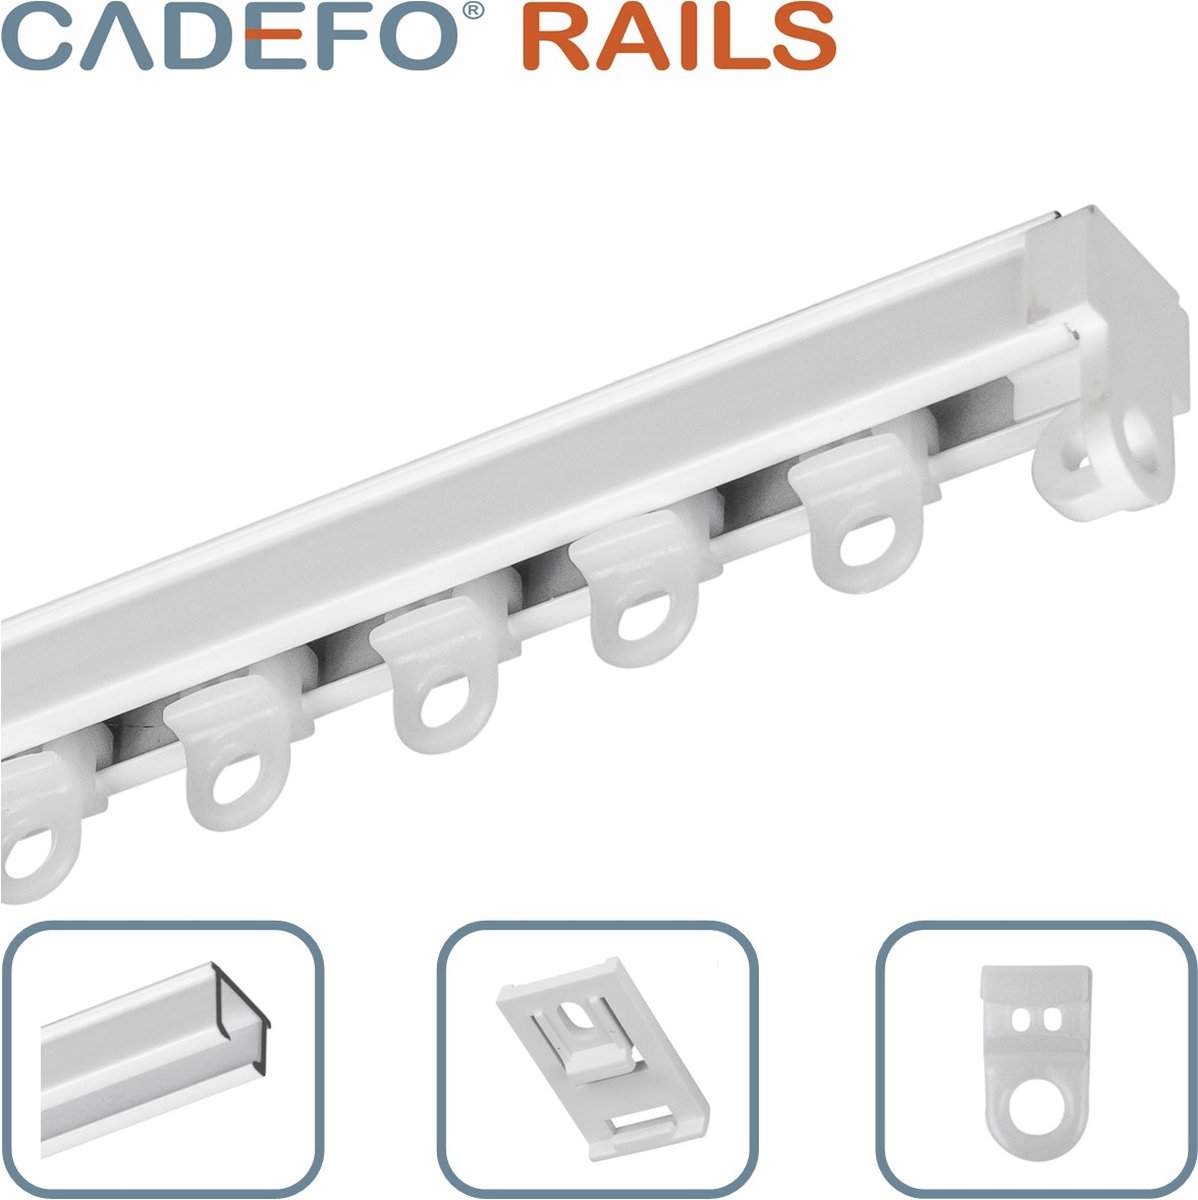 CADEFO RAILS (101 - 150 cm) Gordijnrails - Compleet op maat! - UIT 1 STUK - Leverbaar tot 6 meter - Plafondbevestiging - Lengte 148 cm